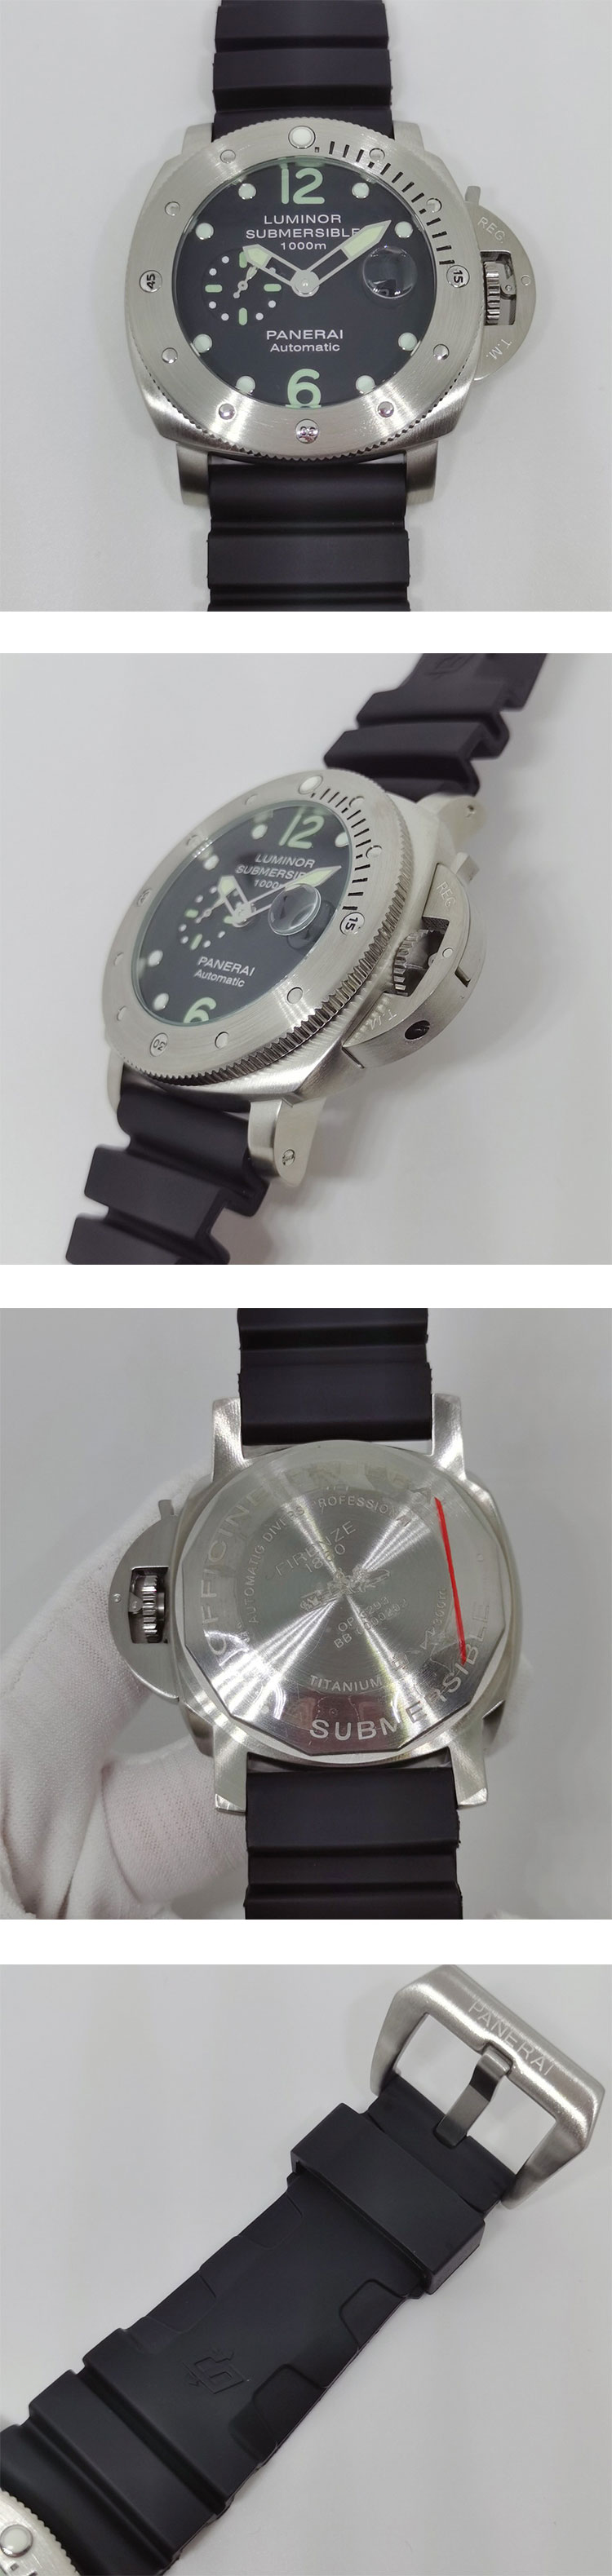 【PANERAI】スーパーコピー時計 PAM00243 ルミノール サブマーシブル デイト  自動巻き